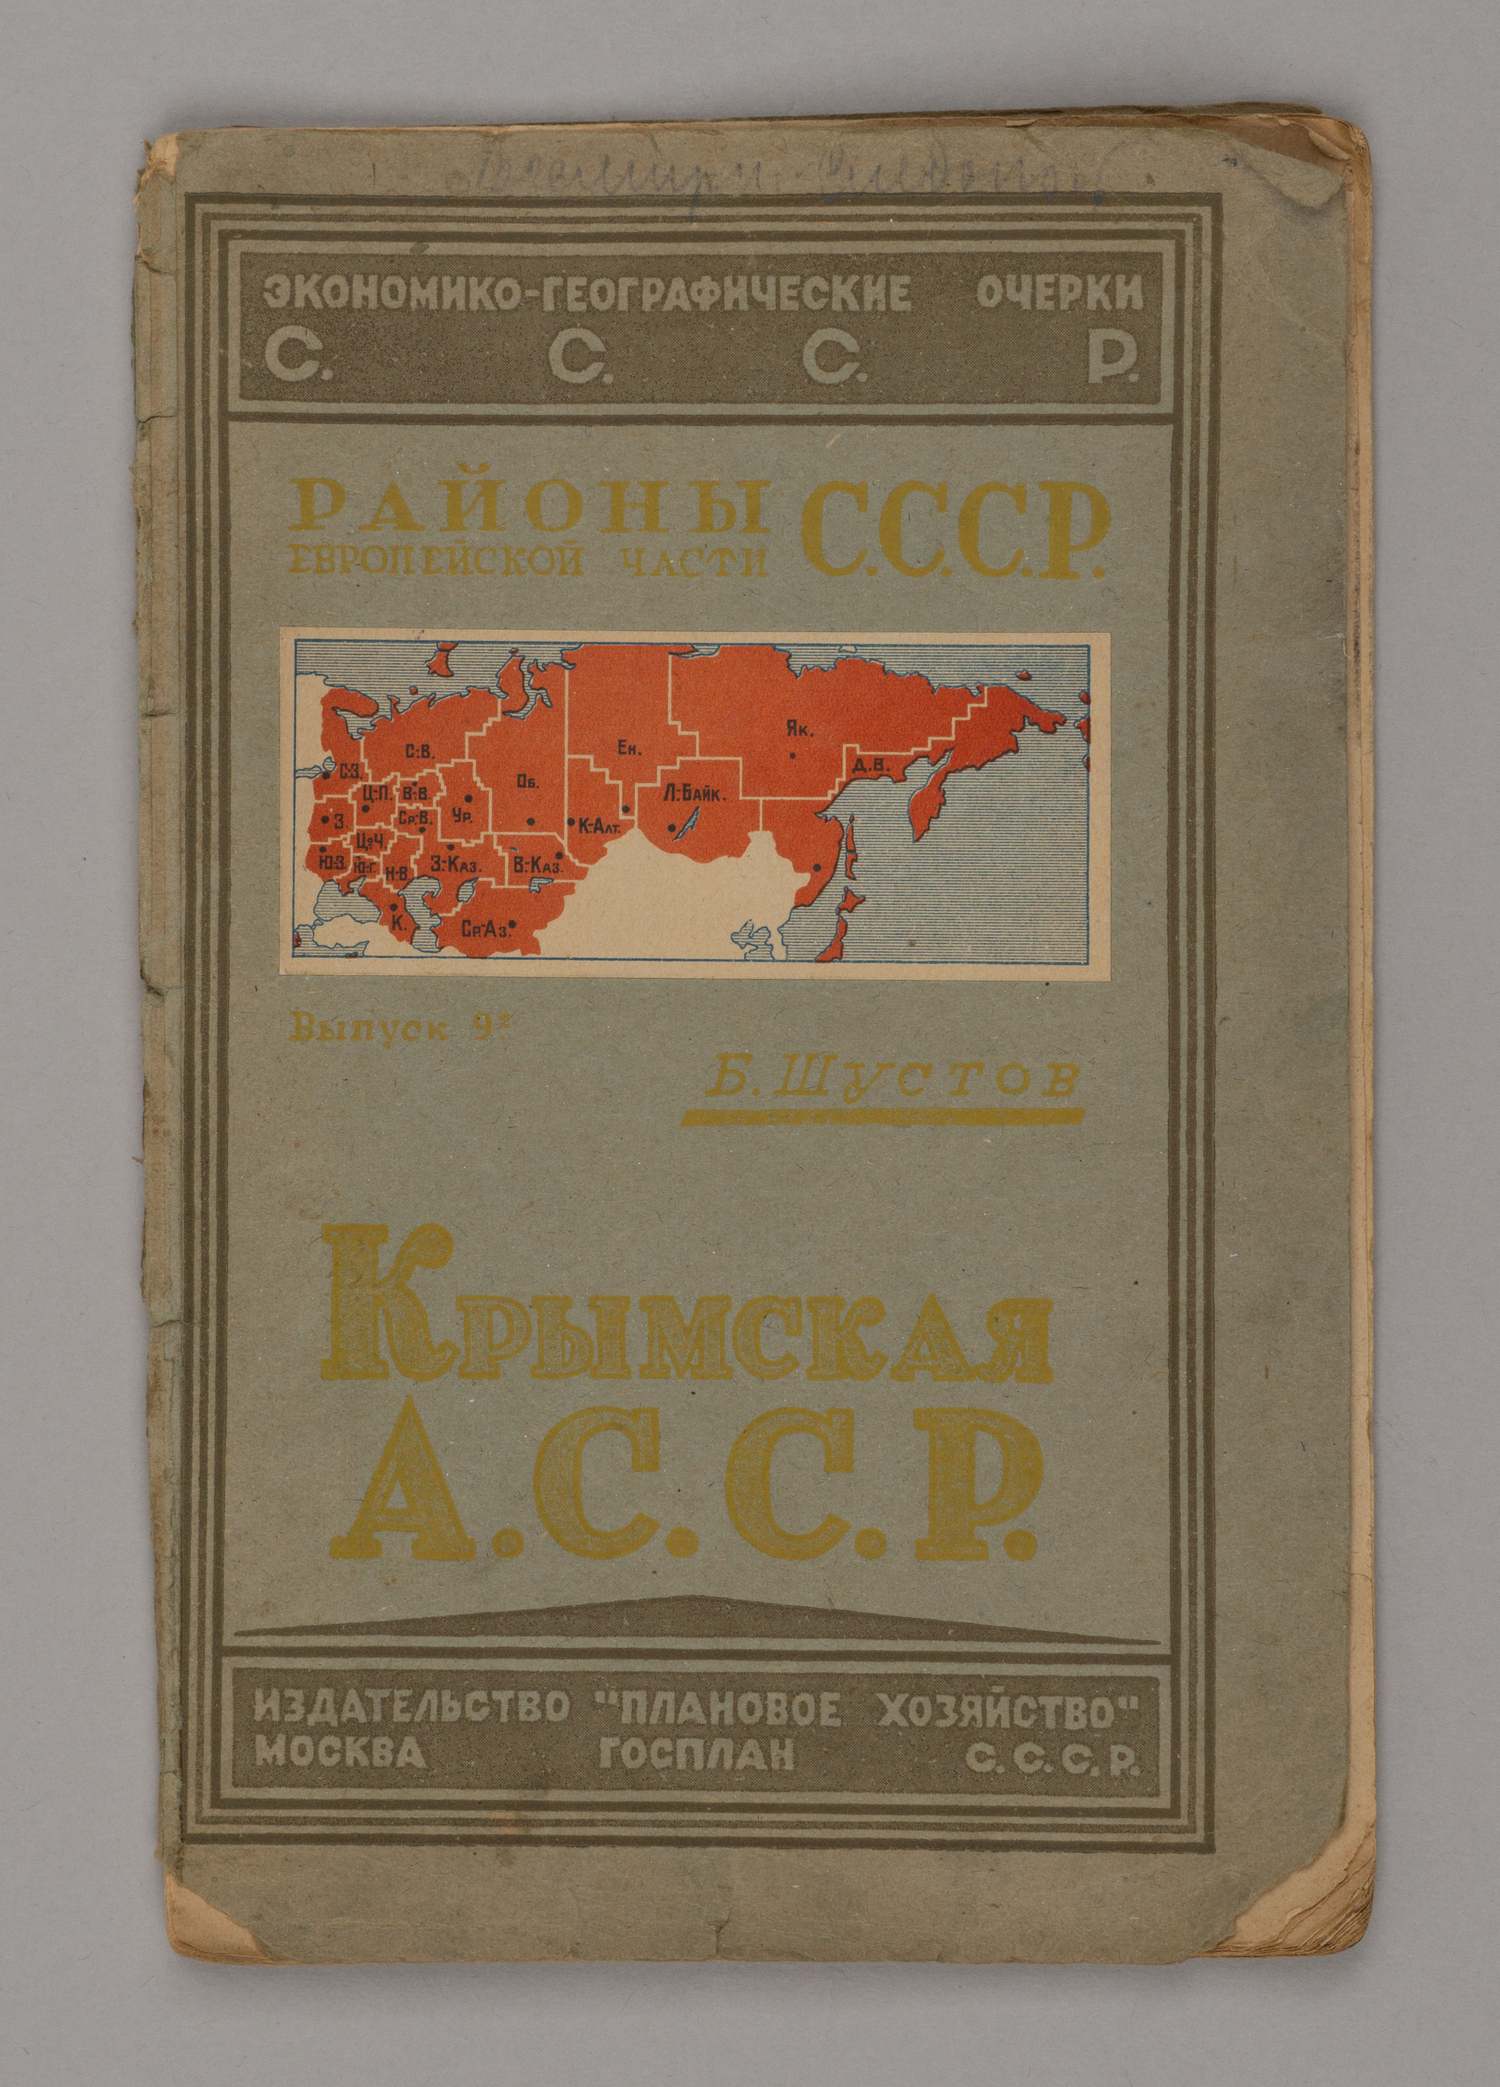 Шустов Б. Крымская АССР (М., 1927).